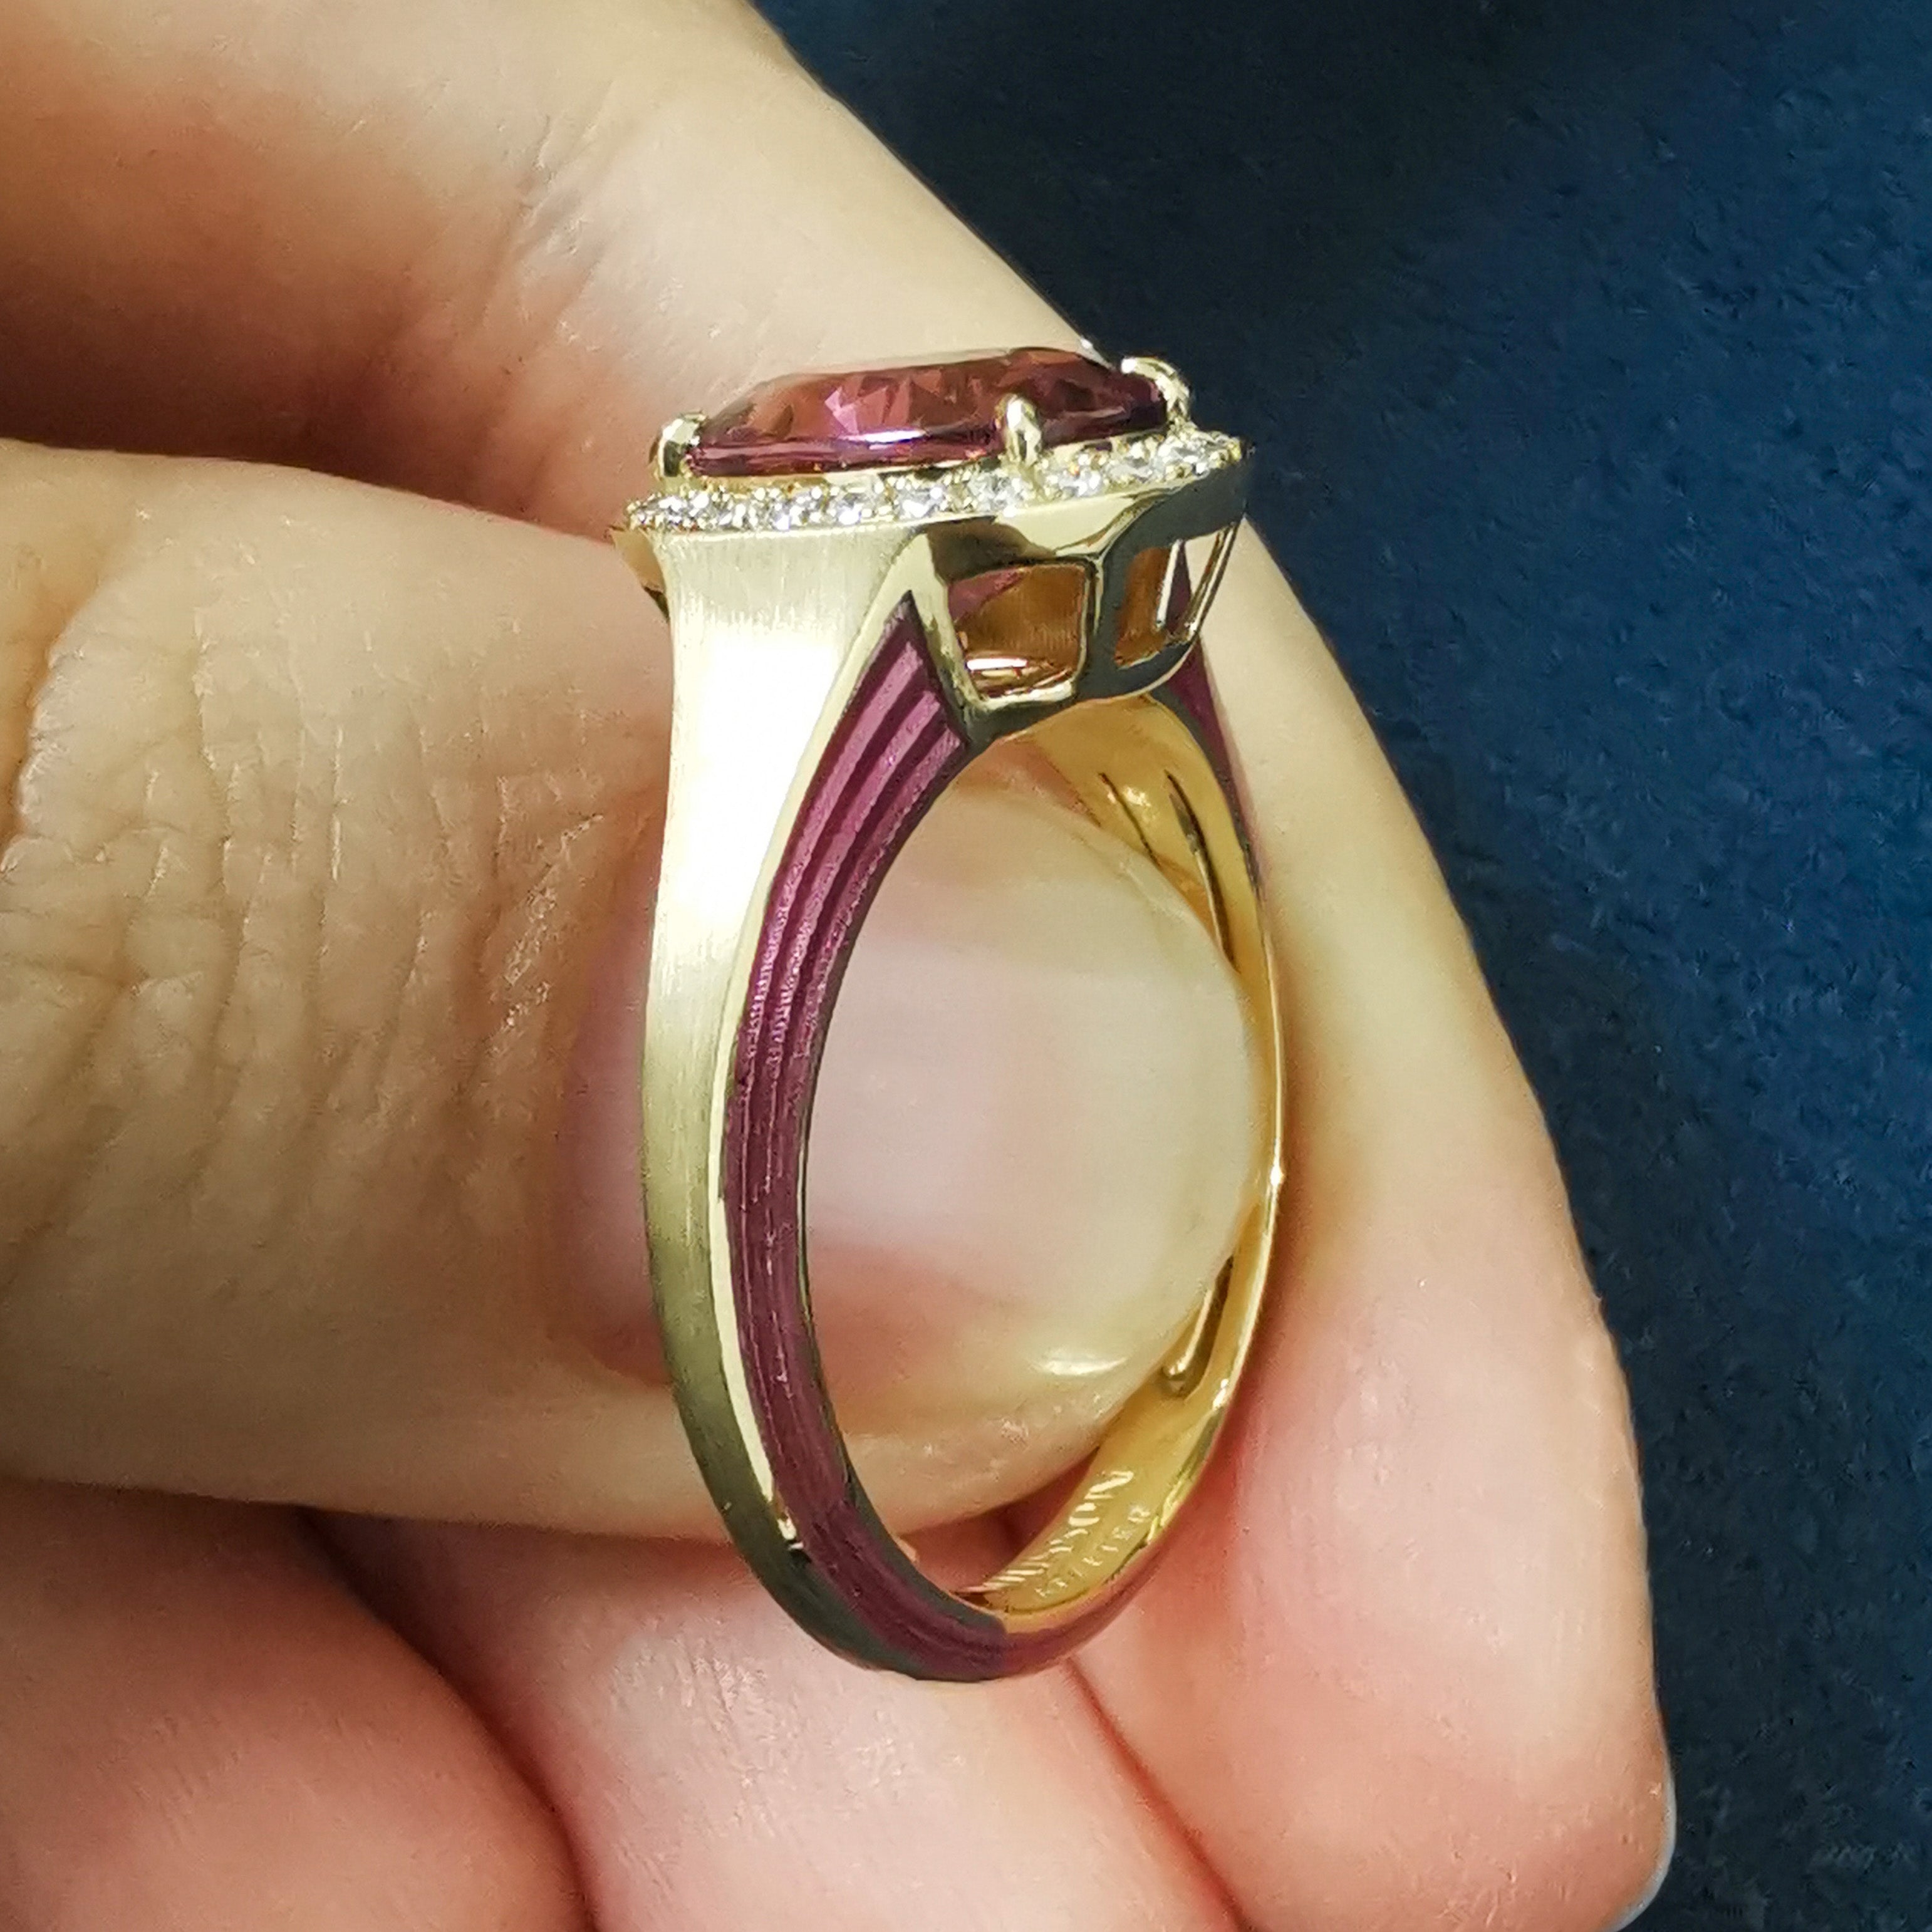 R 0143-02, 18K Yellow Gold, Pink Tourmaline, Diamonds, Enamel Ring